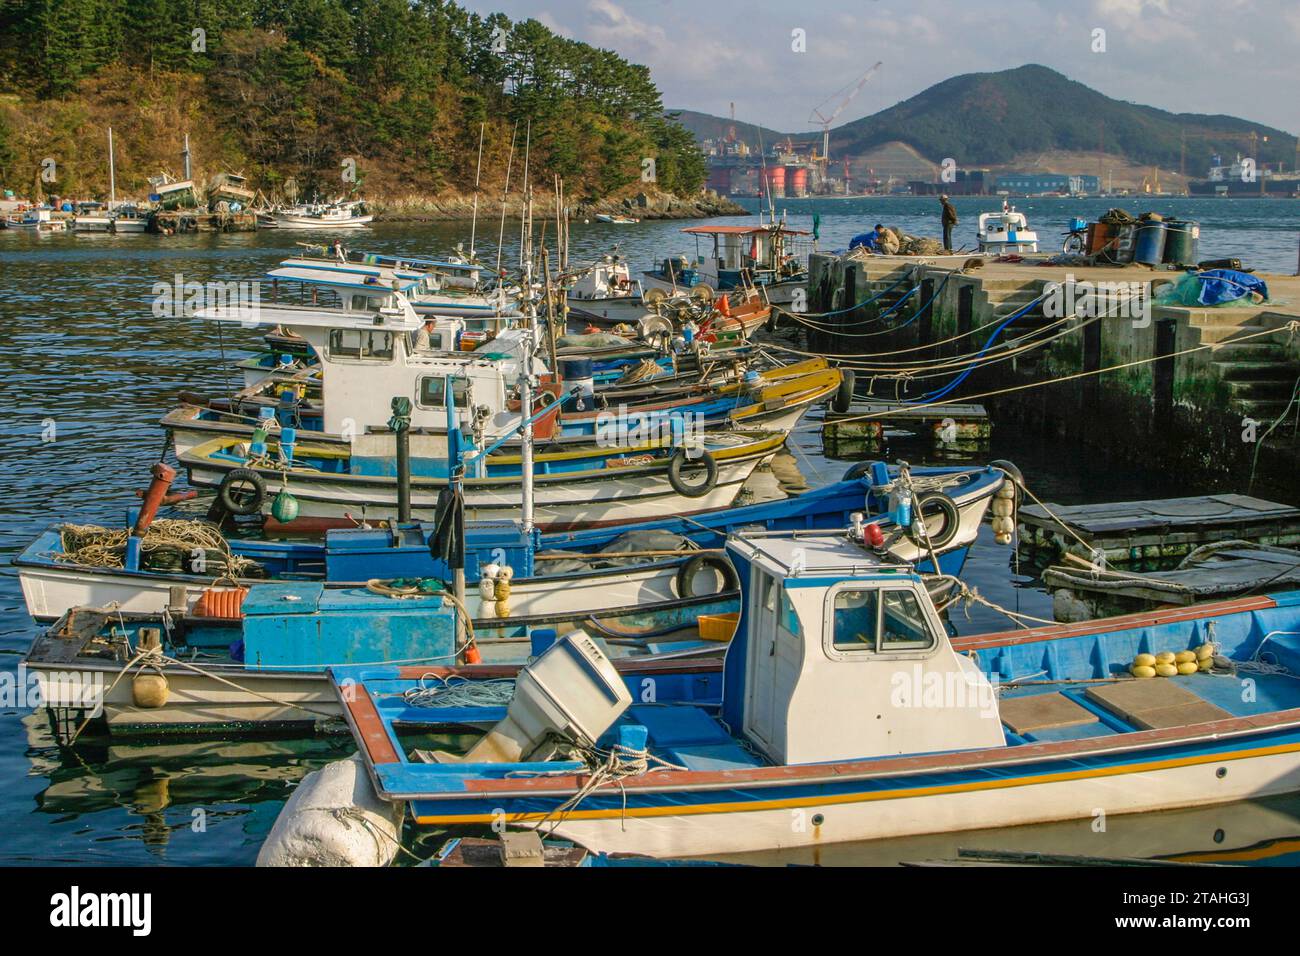 Fishing boats in Okpo, South Korea Stock Photo